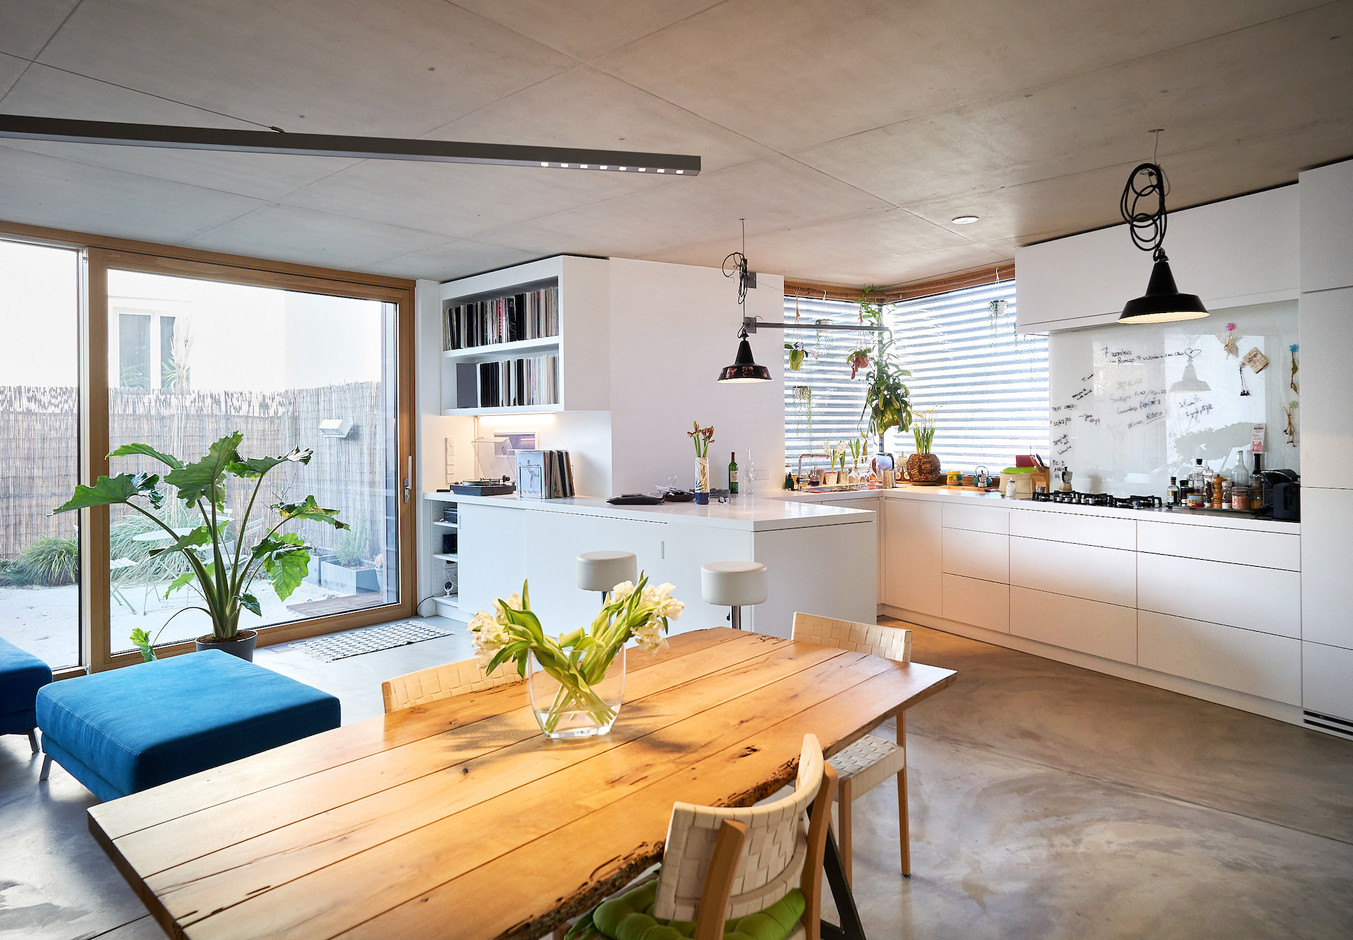 La cuisine est très importante pour Donato Rotunno, et c’est un espace pour lequel il n’a fait aucune concession. La hauteur est adaptée à sa taille, il a insisté pour avoir une plaque au gaz, et la fenêtre d’angle cadre la vue. (Photo: Andrés Lejona/Maison Moderne)